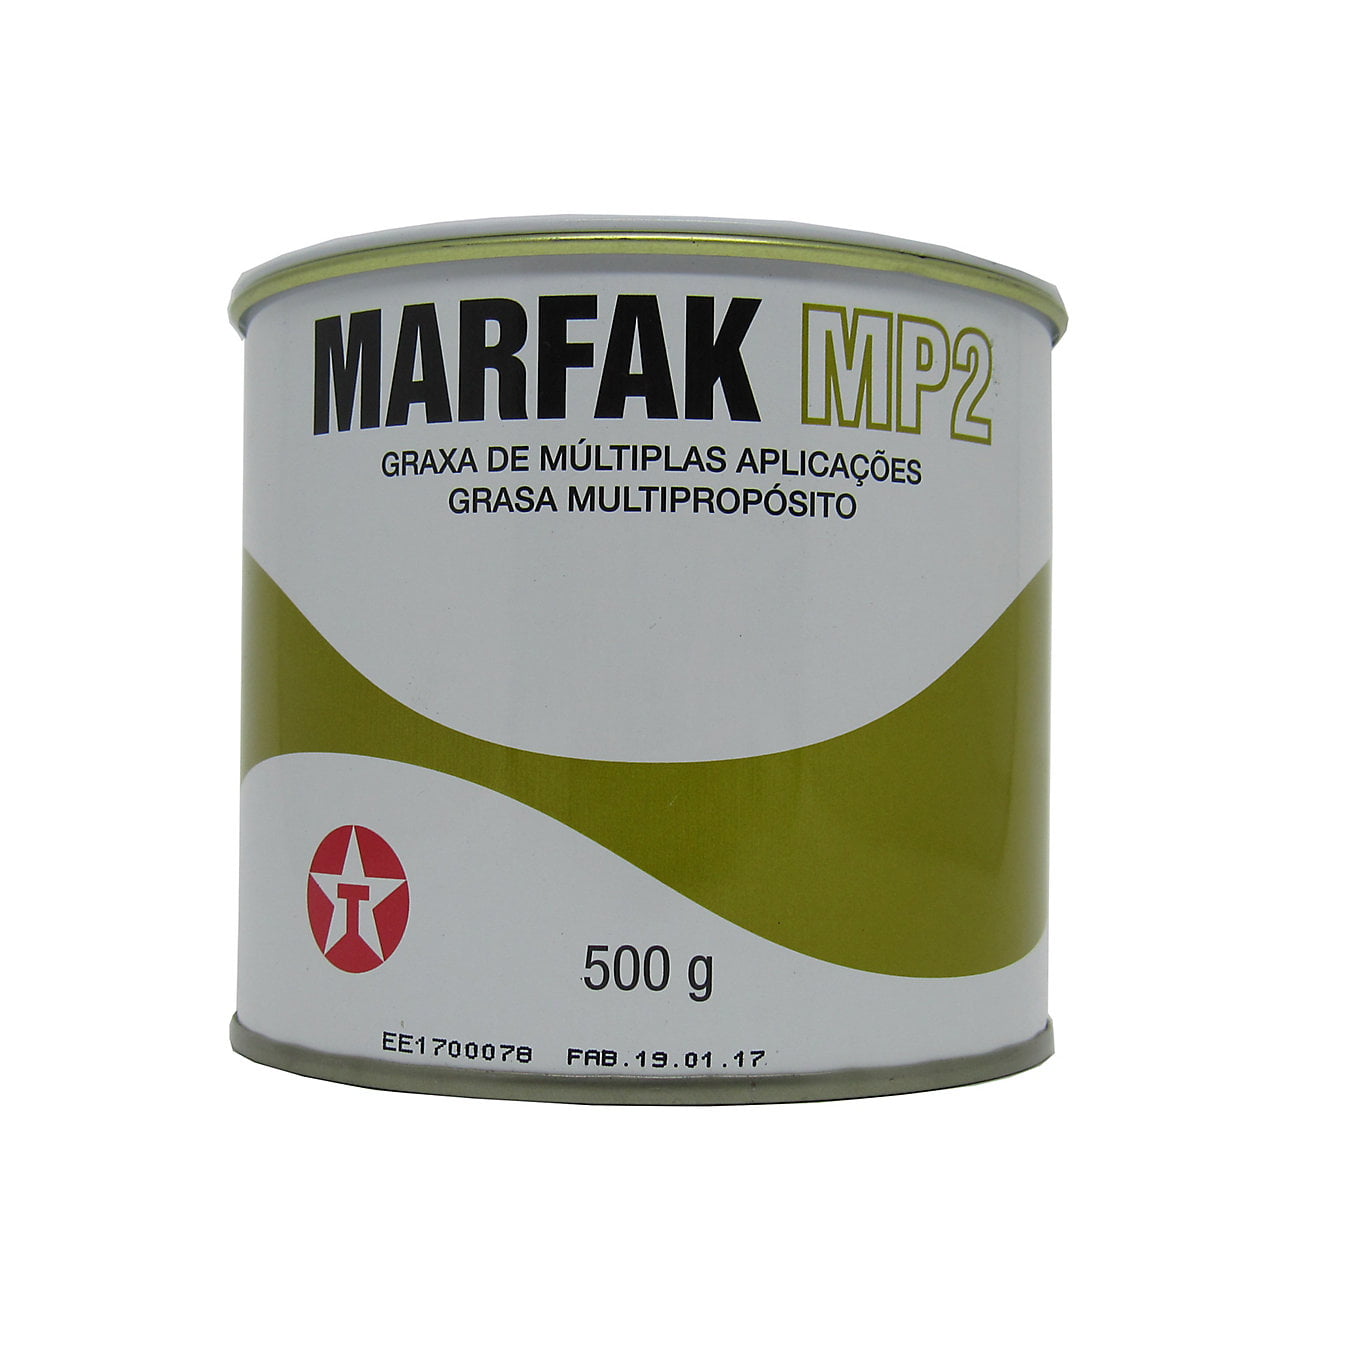 Graxa De Múltiplas Aplicações Marfak MP2 500GR em até 6x sem juros